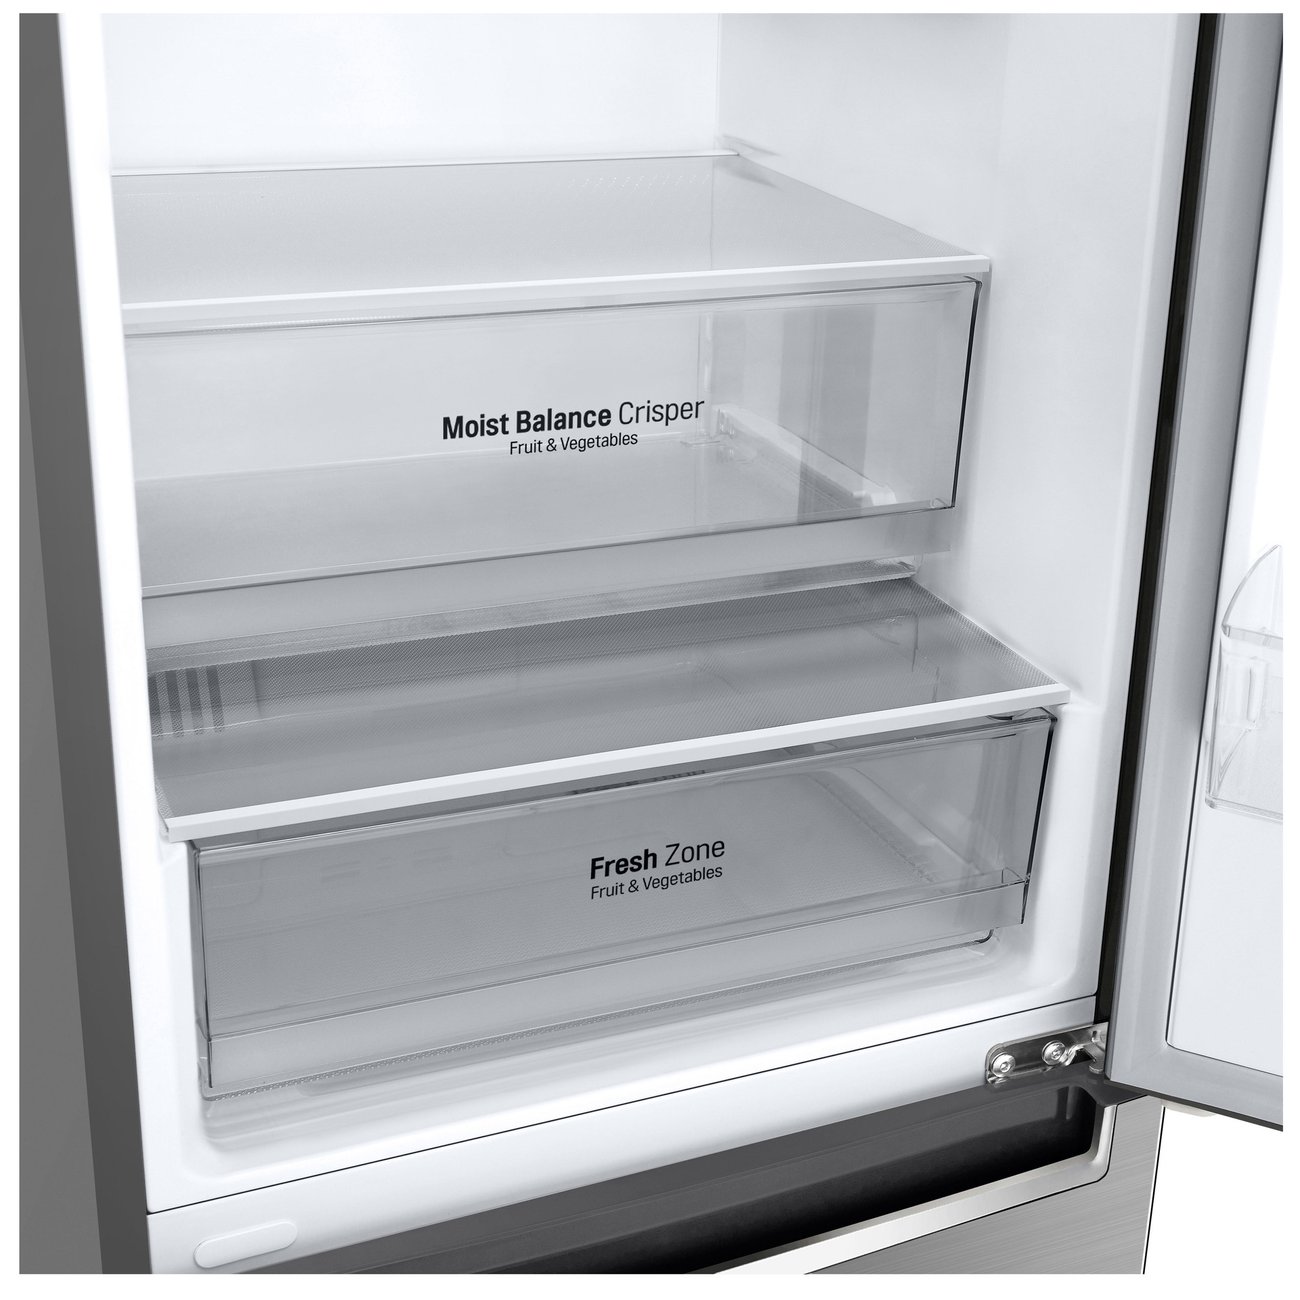 Хладилник с фризер LG GBF61PZJMN , 340 l, E , No Frost , Инокс